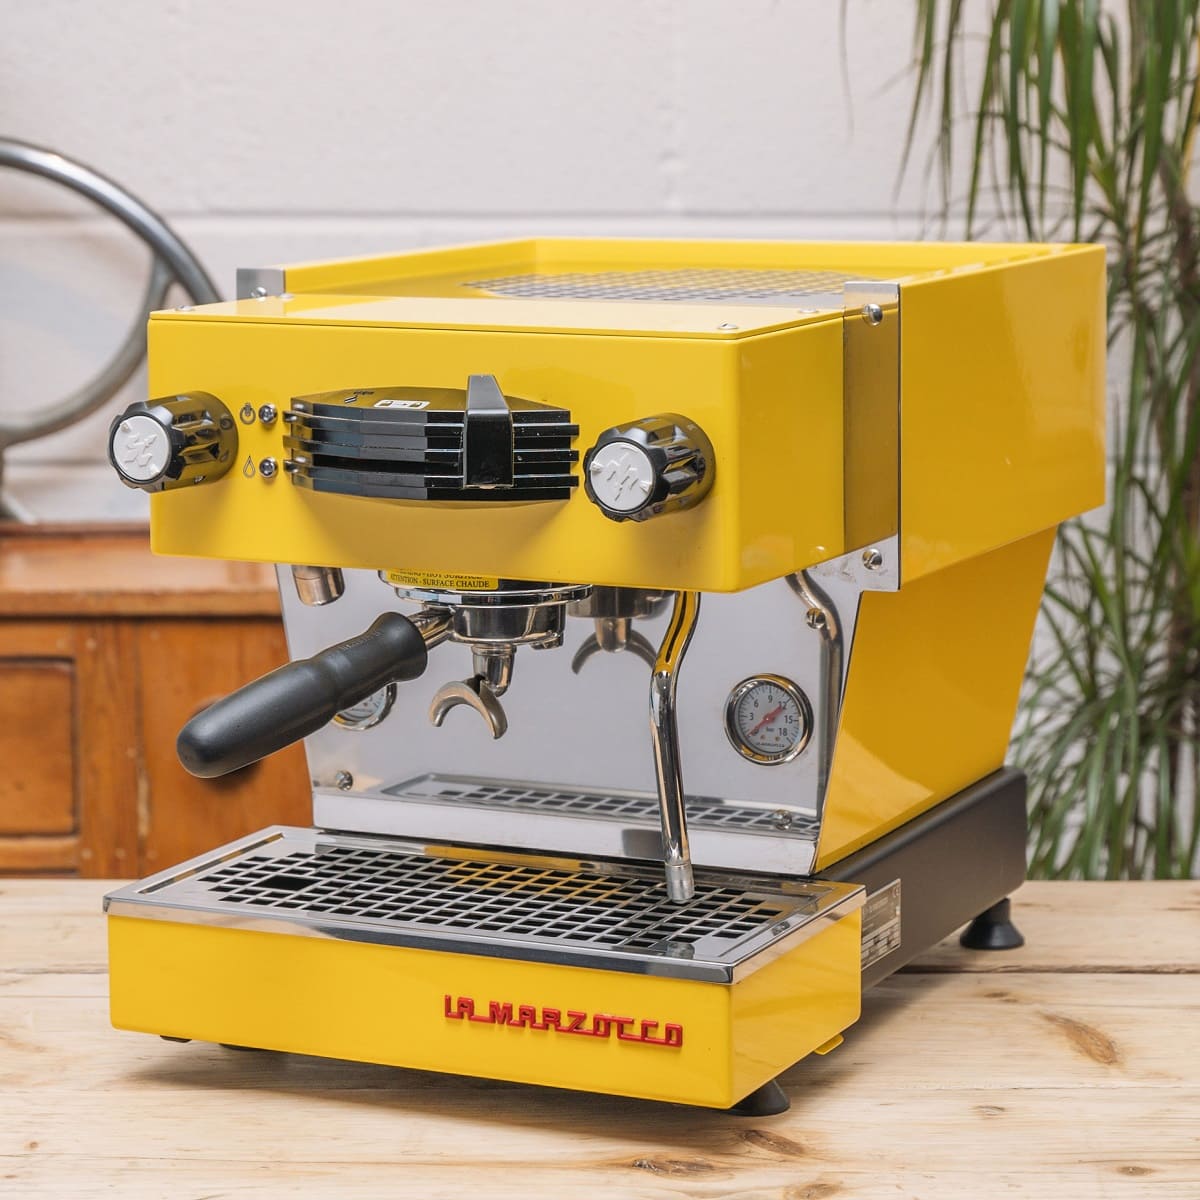 How To Use The La Marzocco Espresso Machine